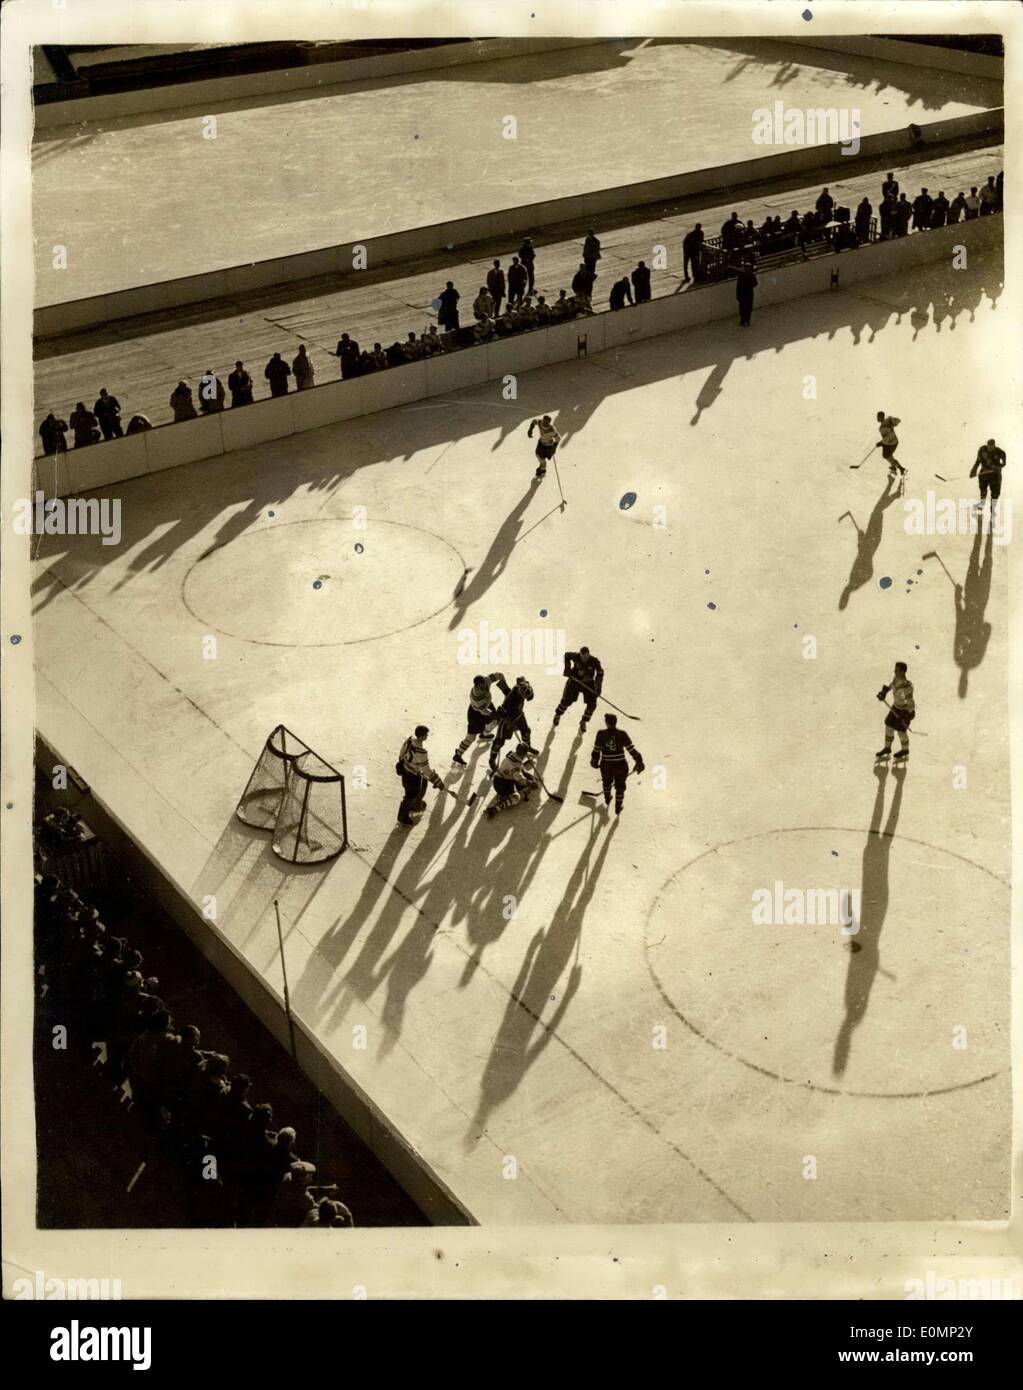 30 janvier 1956 - Jeux Olympiques d'hiver de Cortina. Soleil et ombre sur la patinoire. Photo montre l'ombre et soleil attrayant au cours de l'étude match de hockey sur glace entre l'Unite et la Pologne - au cours de l'hiver Jeux Olympiques de Cortina. USA a gagné 4 - 0. Banque D'Images